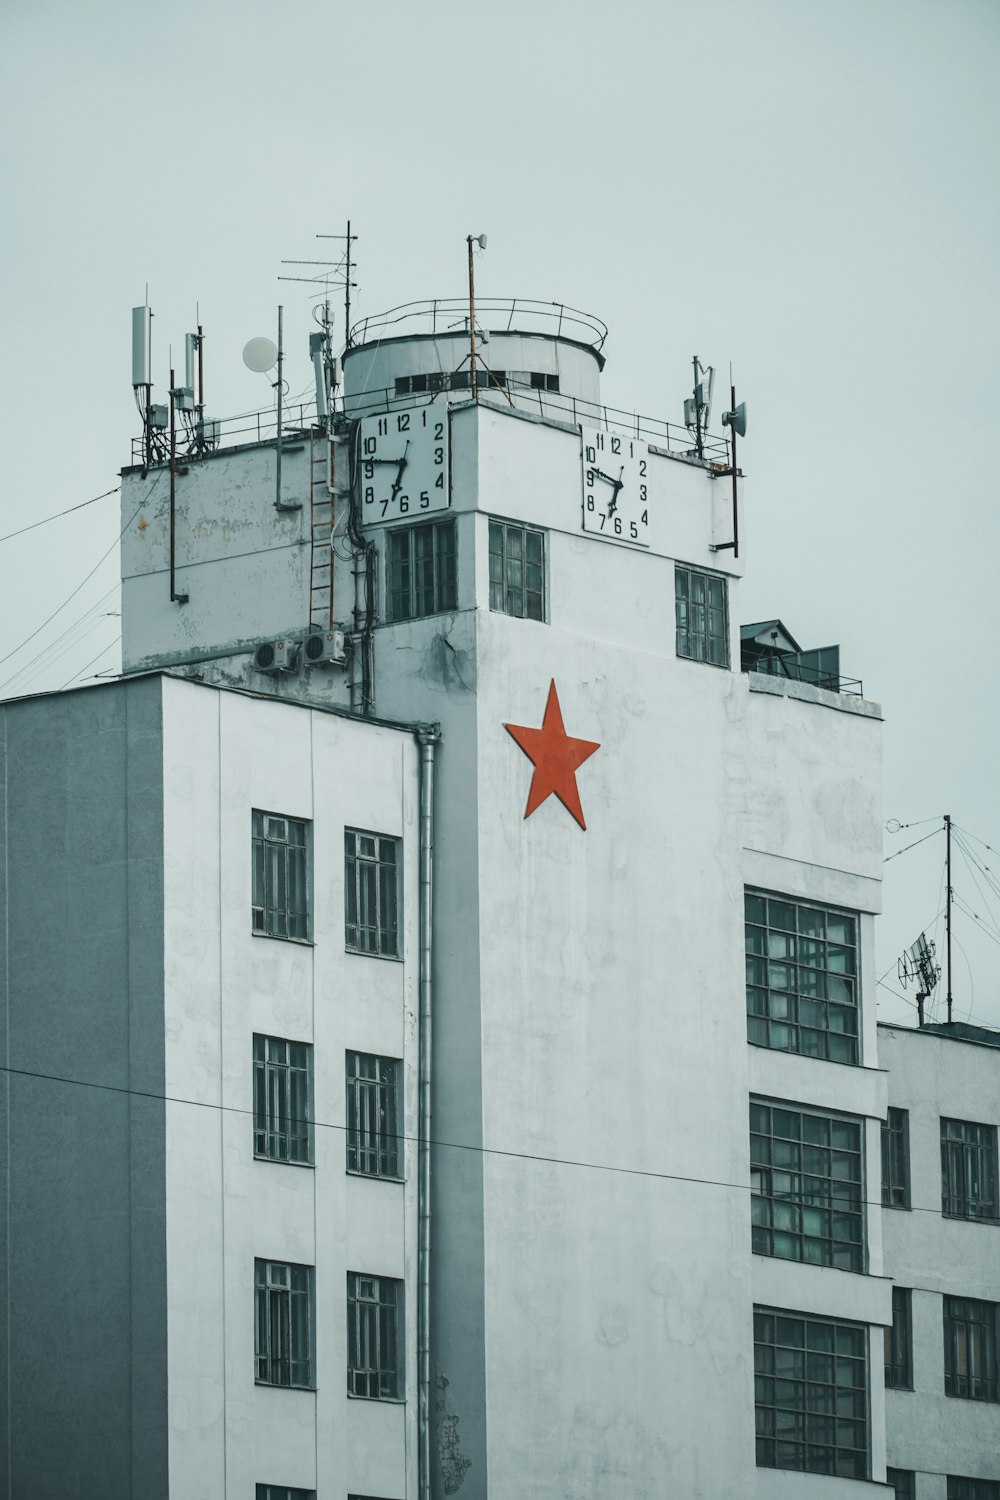 赤い星の旗が描かれた白いコンクリートの建物